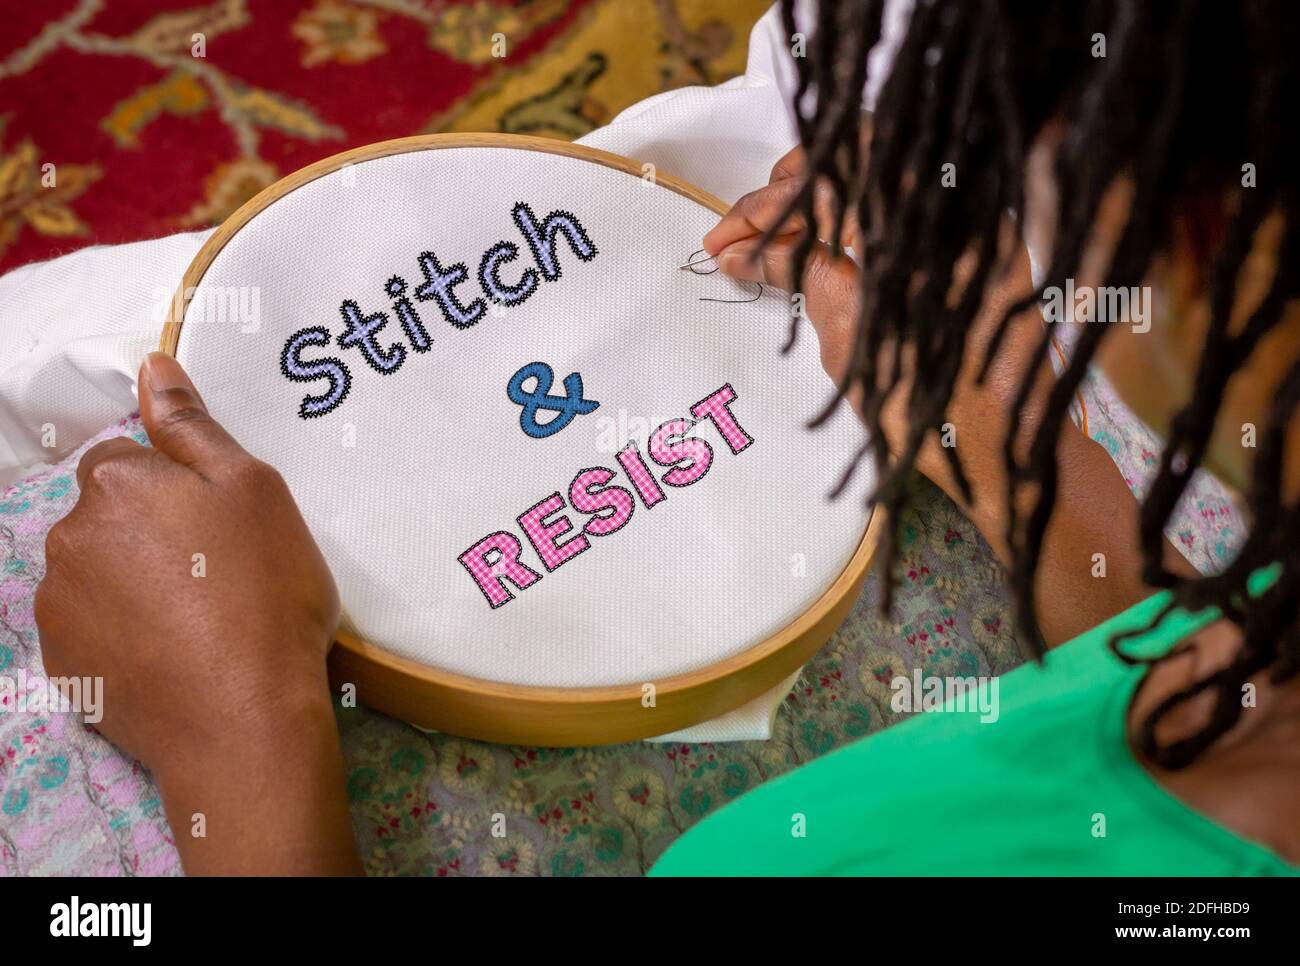 L'activisme de l'artisanat, la femme coudre Stitch et de résister à la broderie sur le houop, l'artisanat militantisme féministe ethnique. Banque D'Images